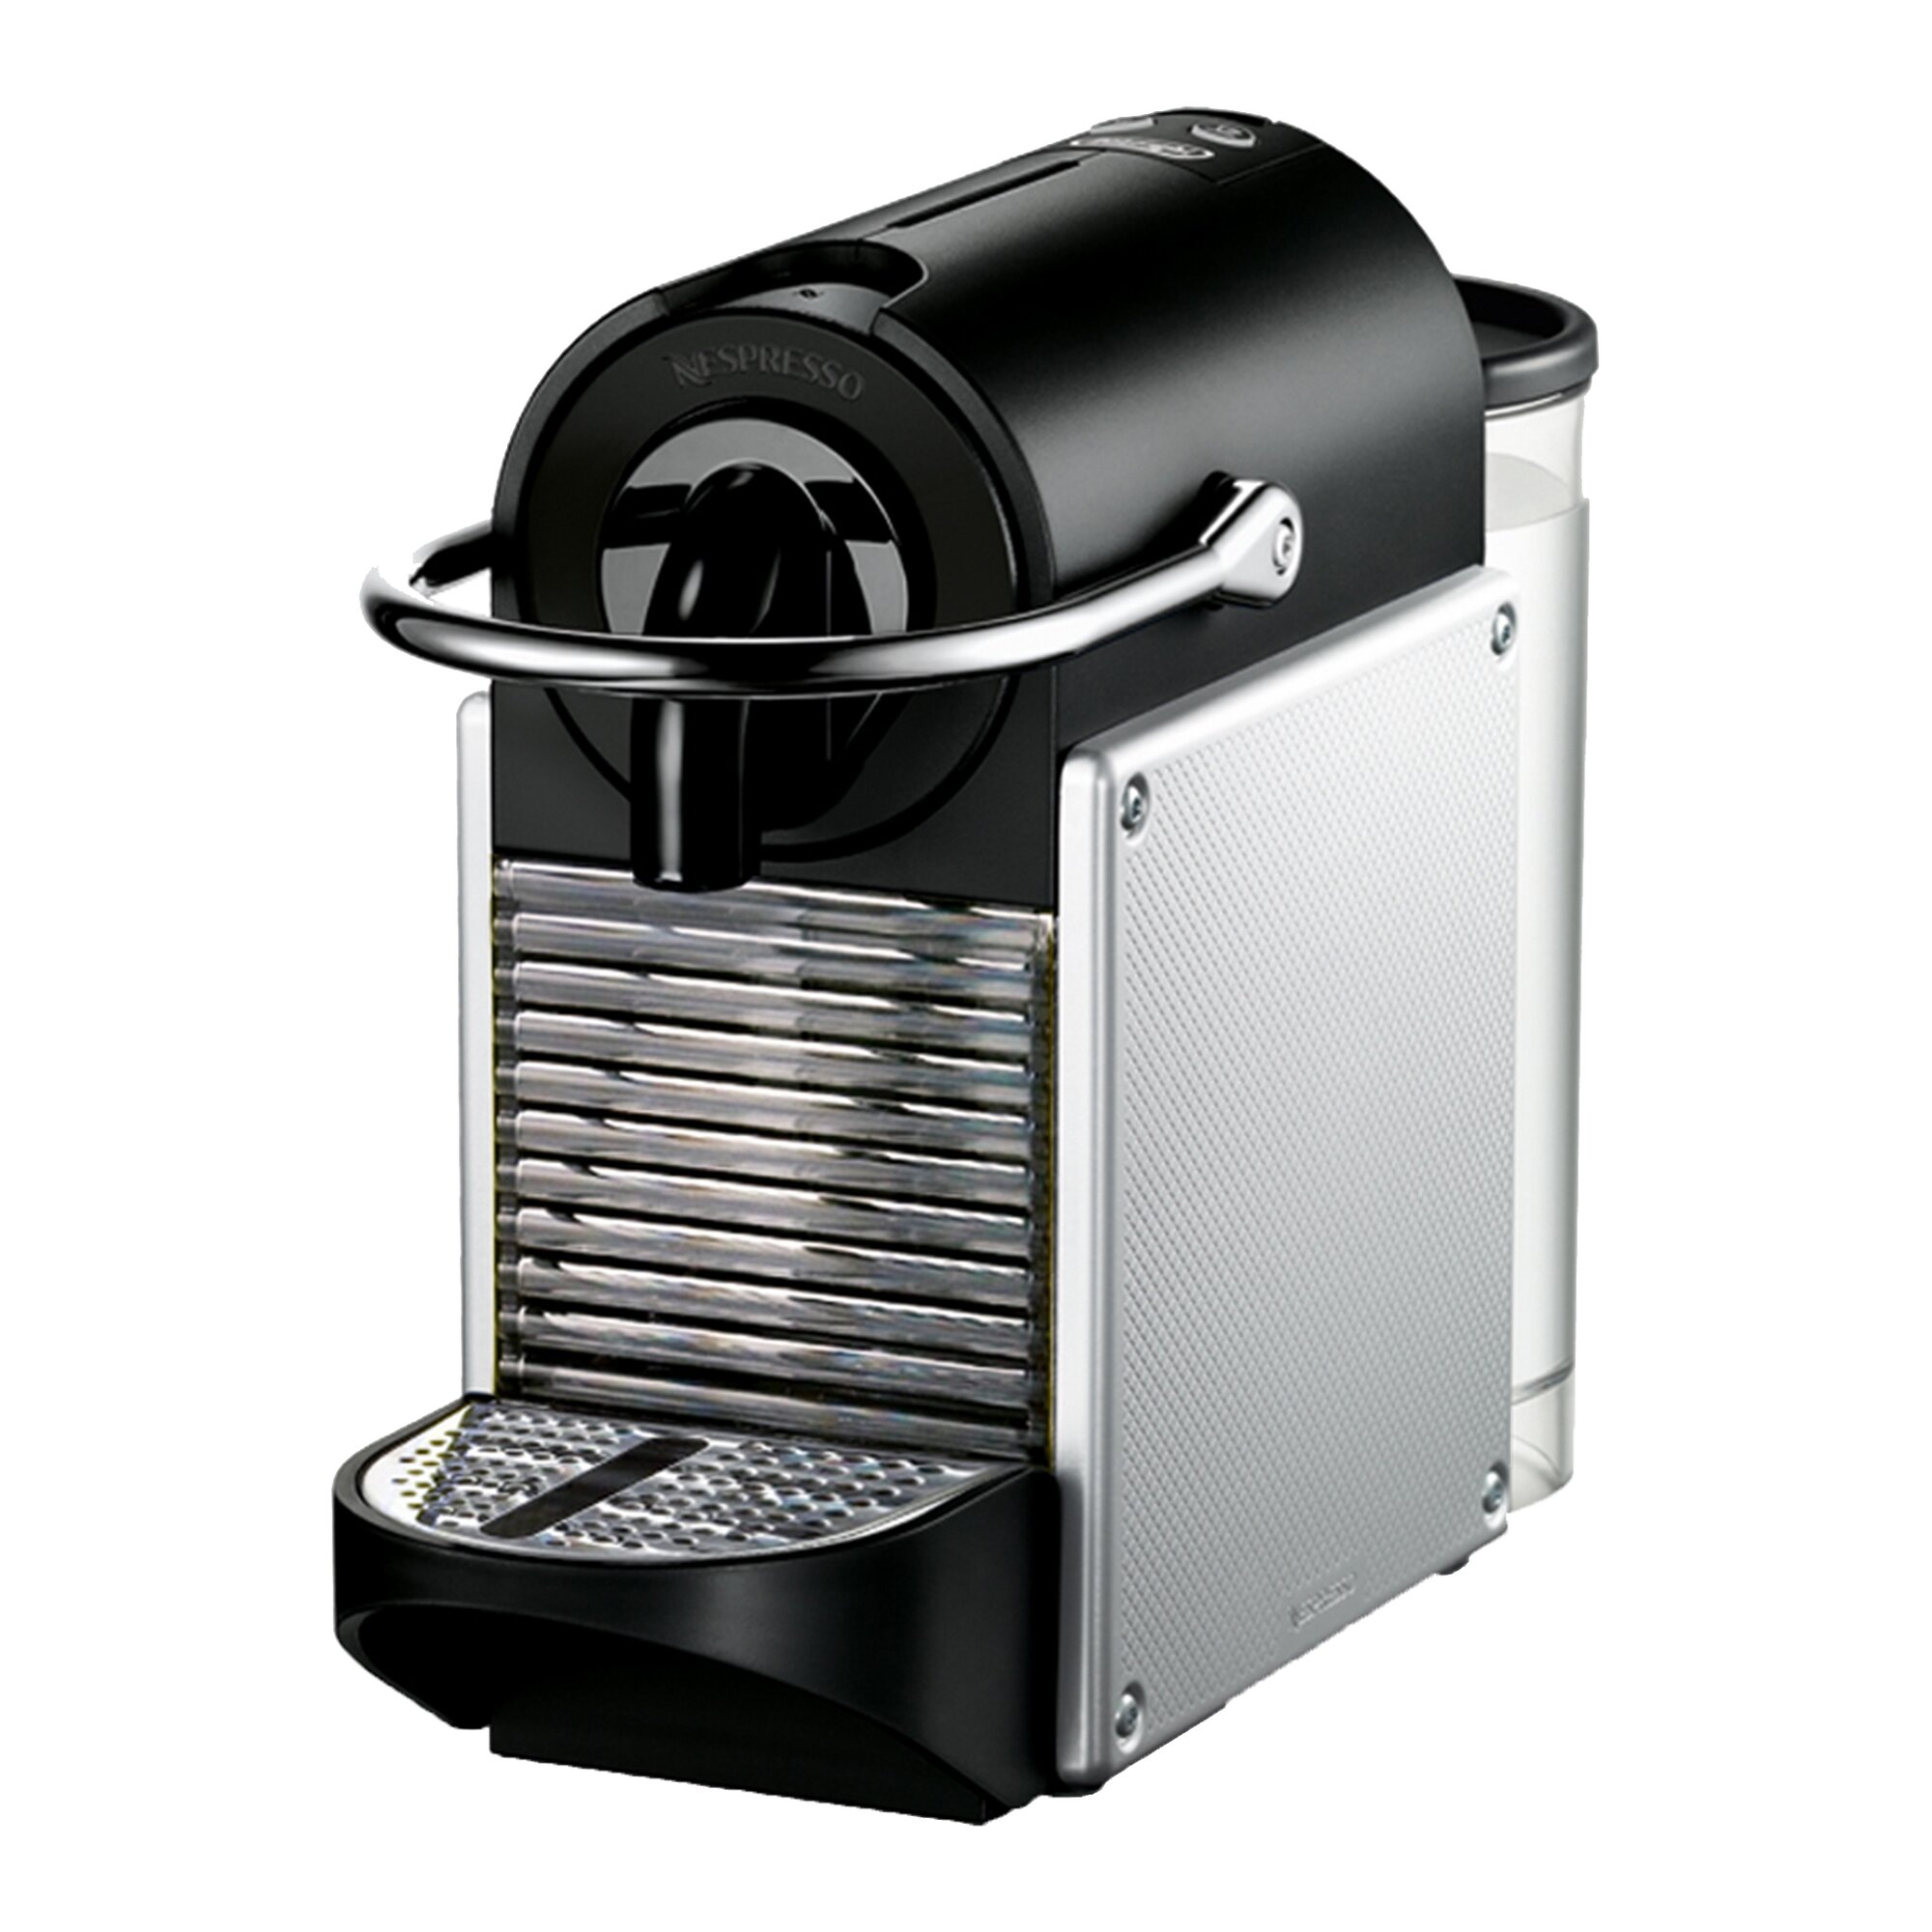 DeLonghi Nespresso Inissia Single-Serve Espresso Machine with Aeroccino